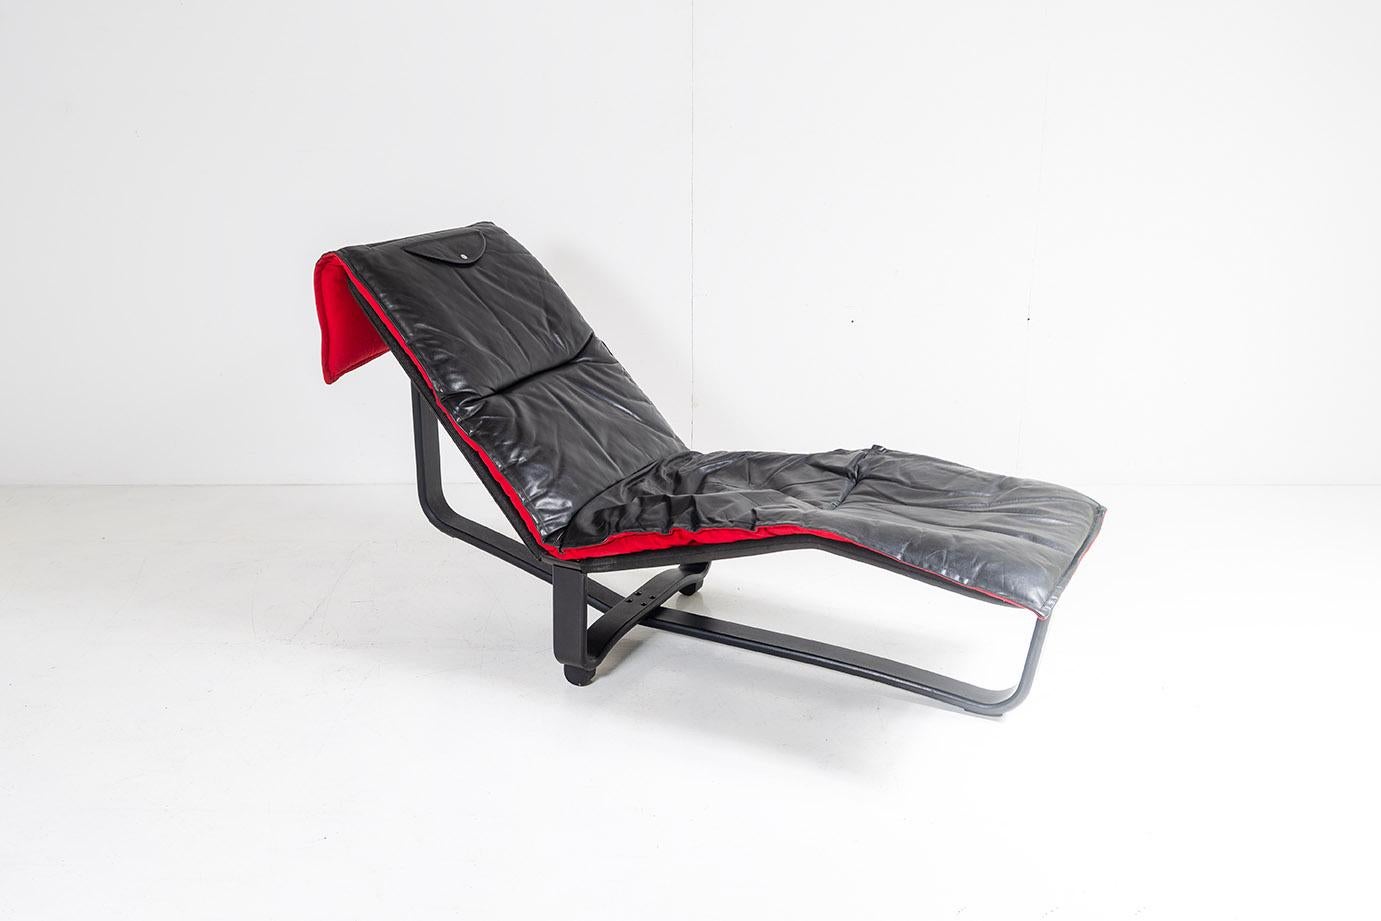 Superbe chaise en cuir noir de la fin des années 1970 conçue par Ingmar & Knut Relling pour Westnofa.  Cuir noir avec coussin amovible réversible qui peut être retourné pour révéler la matière douce en velours rouge.

Un fauteuil très confortable